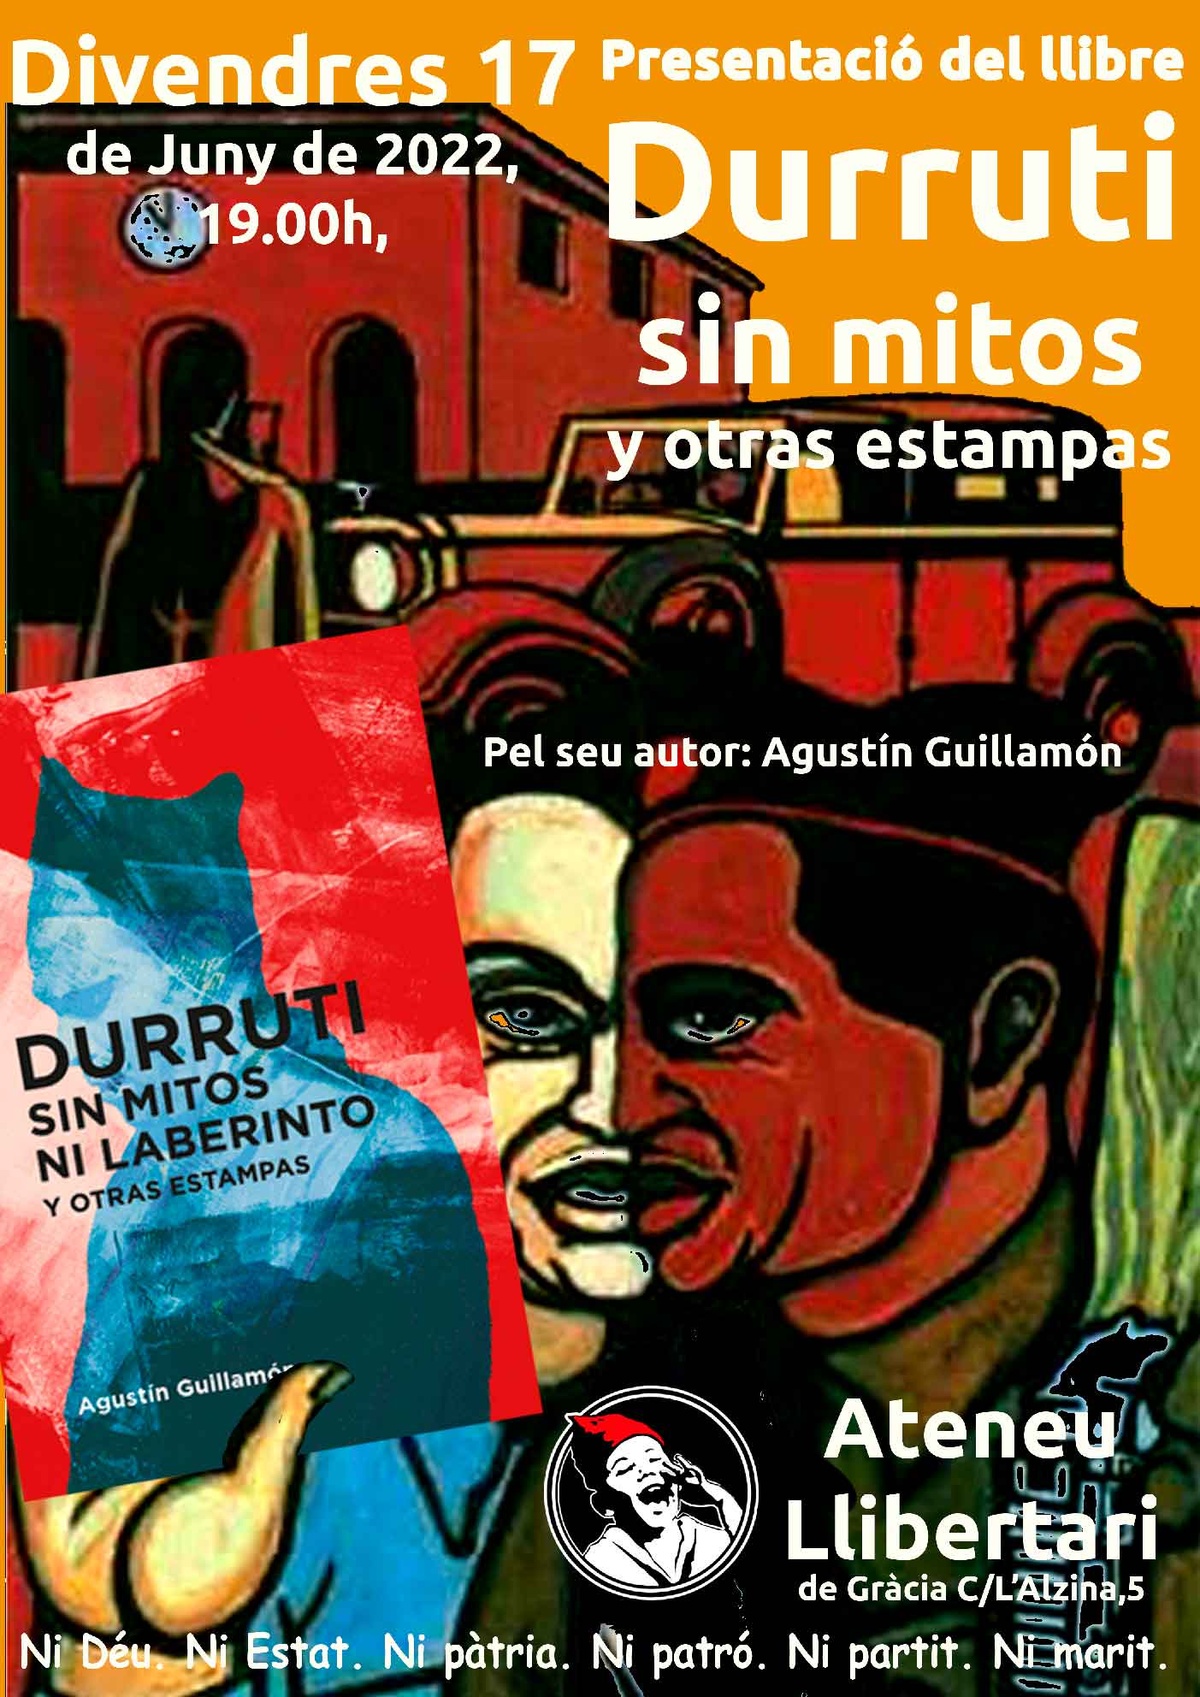 Presentació del llibre: «Durruti sin mitos ni laberintos y otras estampas» amb el seu autor Agustí Guillamón 